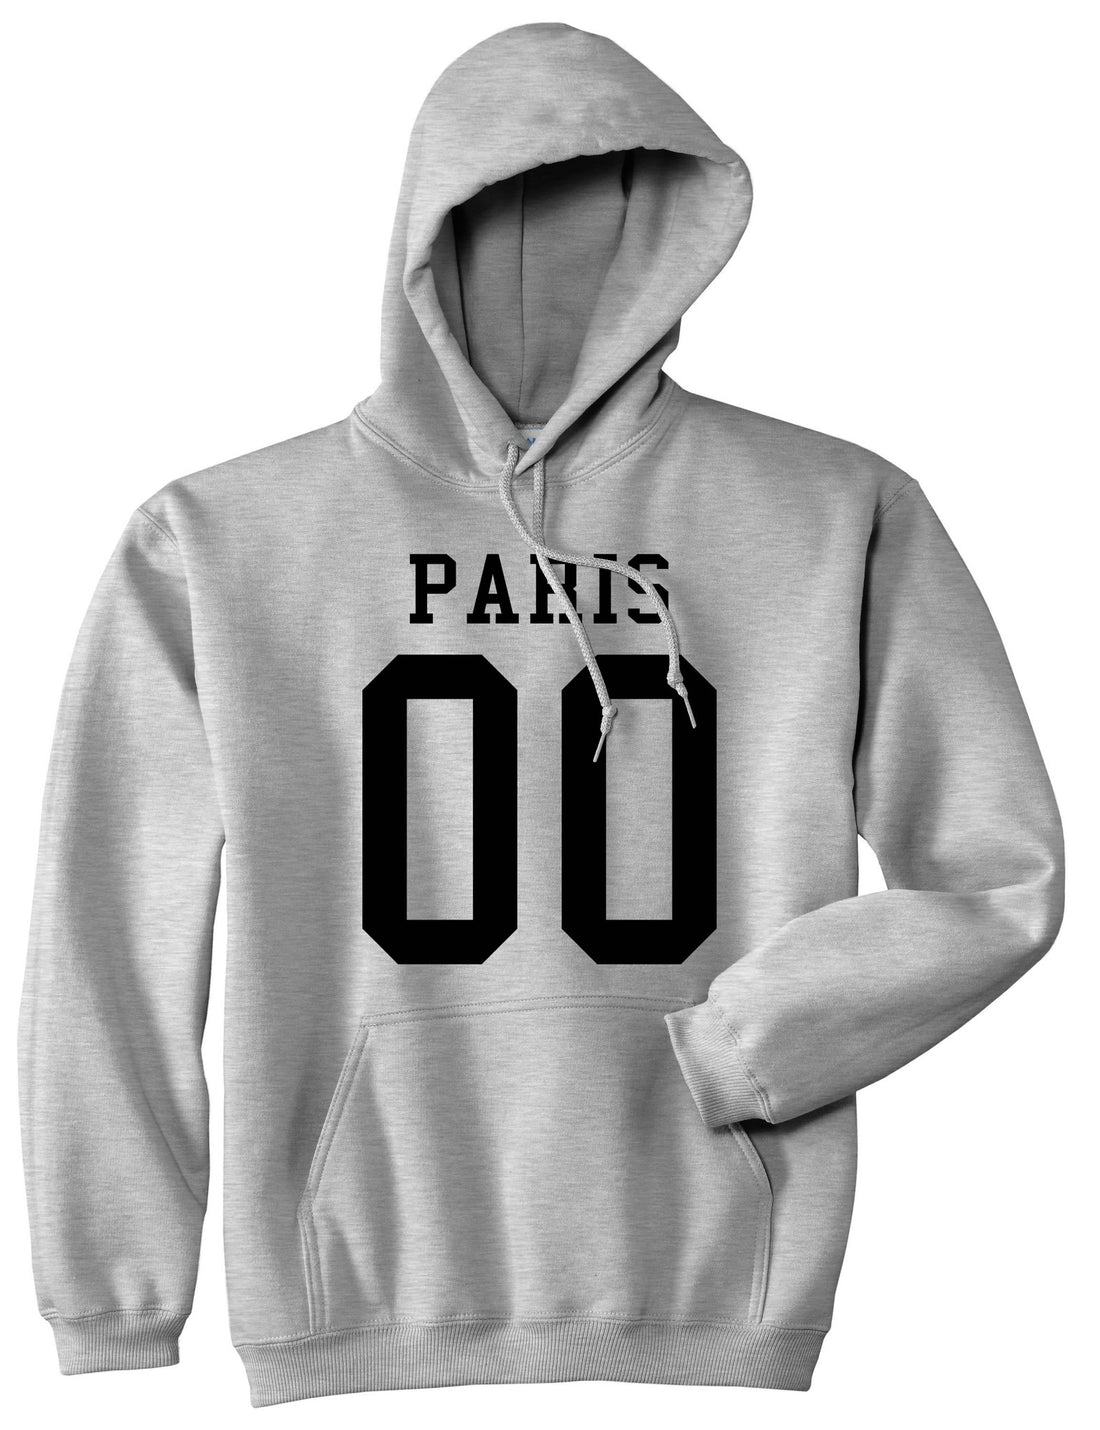 Paris Team 00 Jersey Boys Kids Pullover Hoodie Hoody in Grey By Kings Of NY